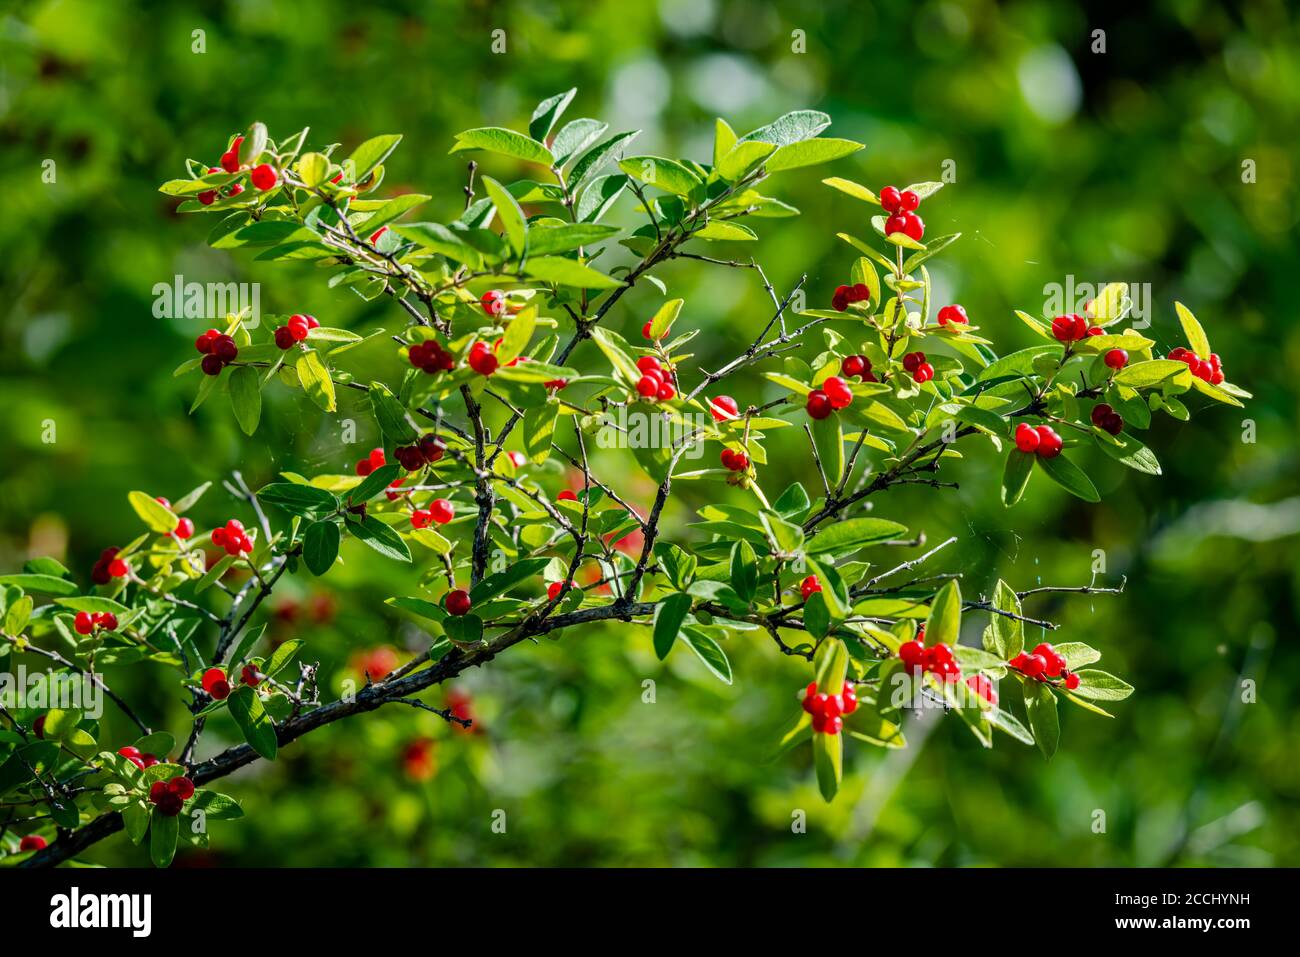 Tatarian Honeysuckle shrub with red berries Stock Photo